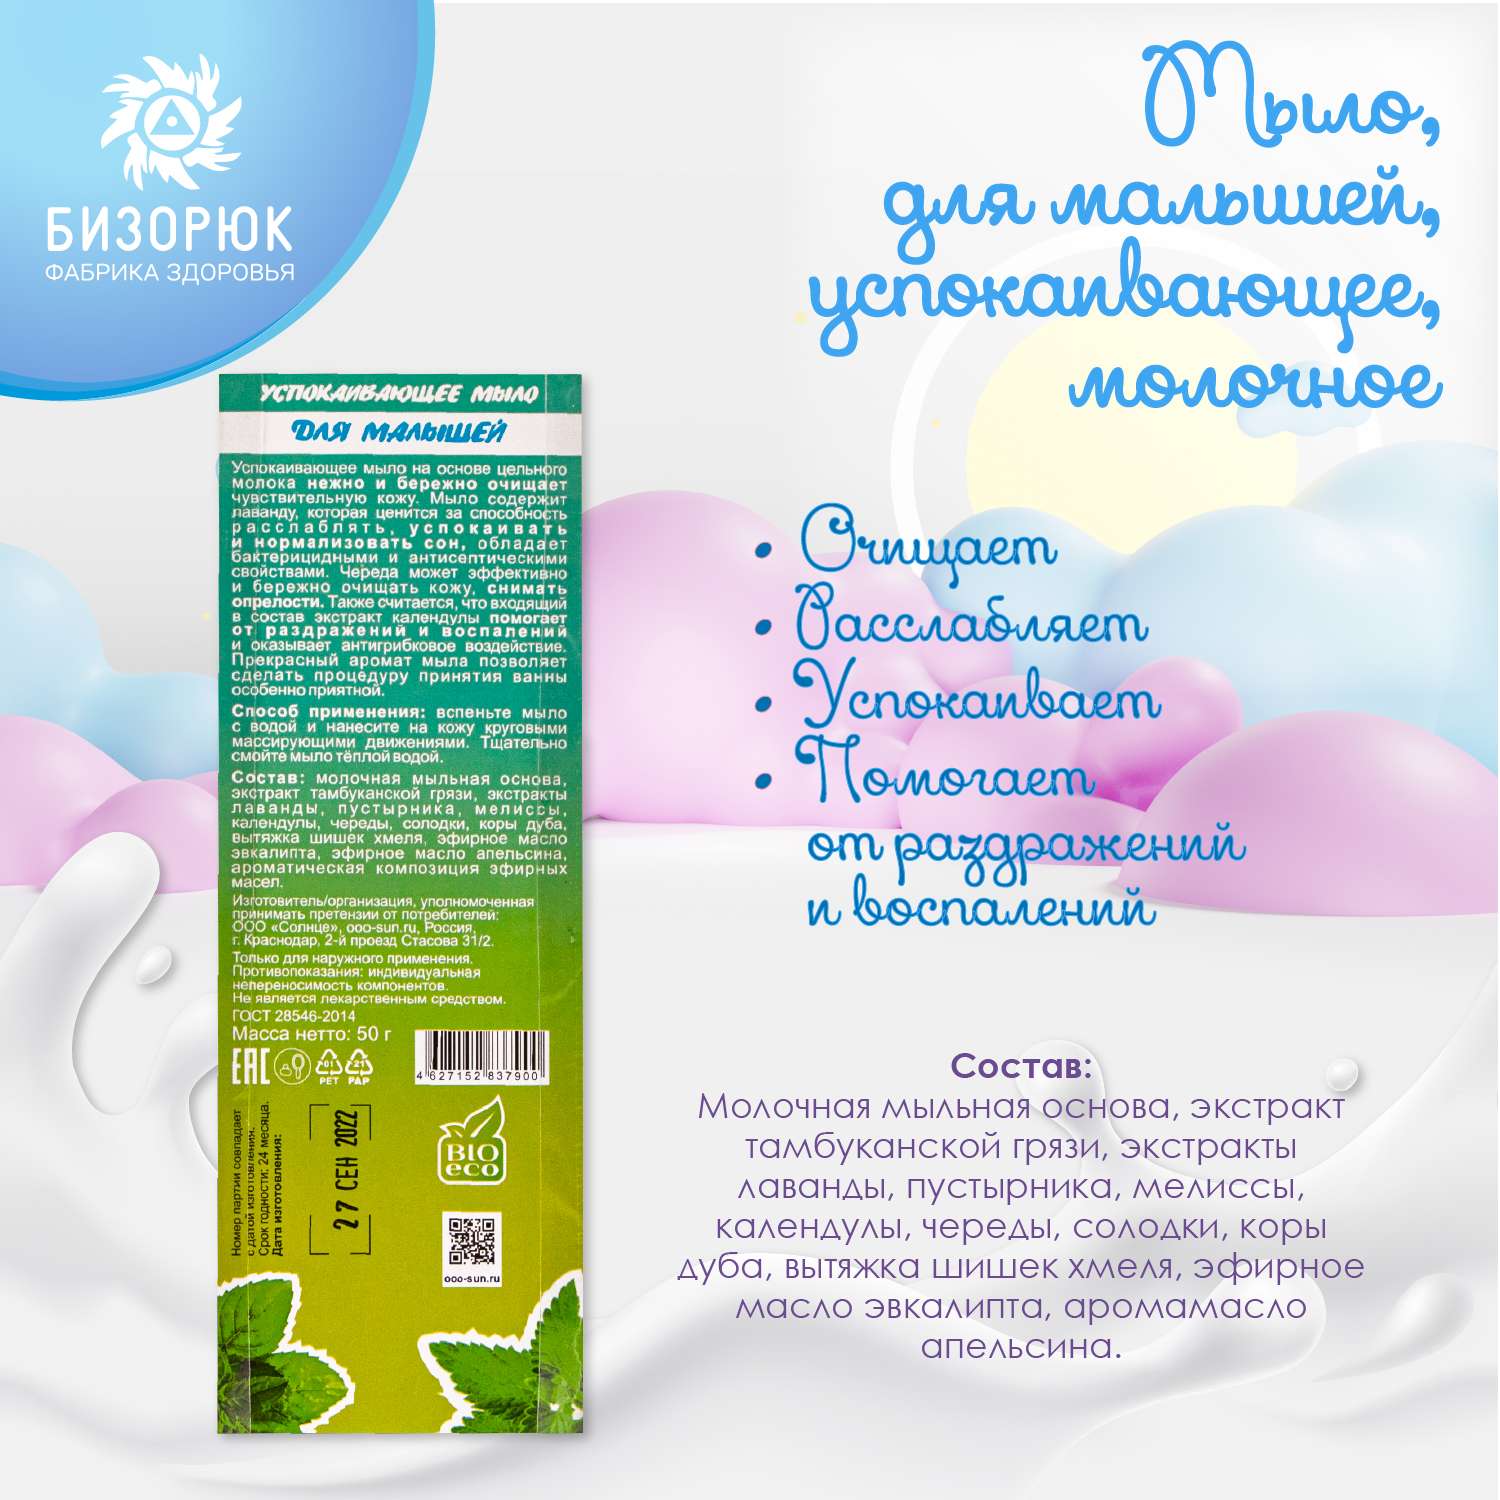 Мыло Бизорюк для малышей успокаивающее молочное 50г - фото 5